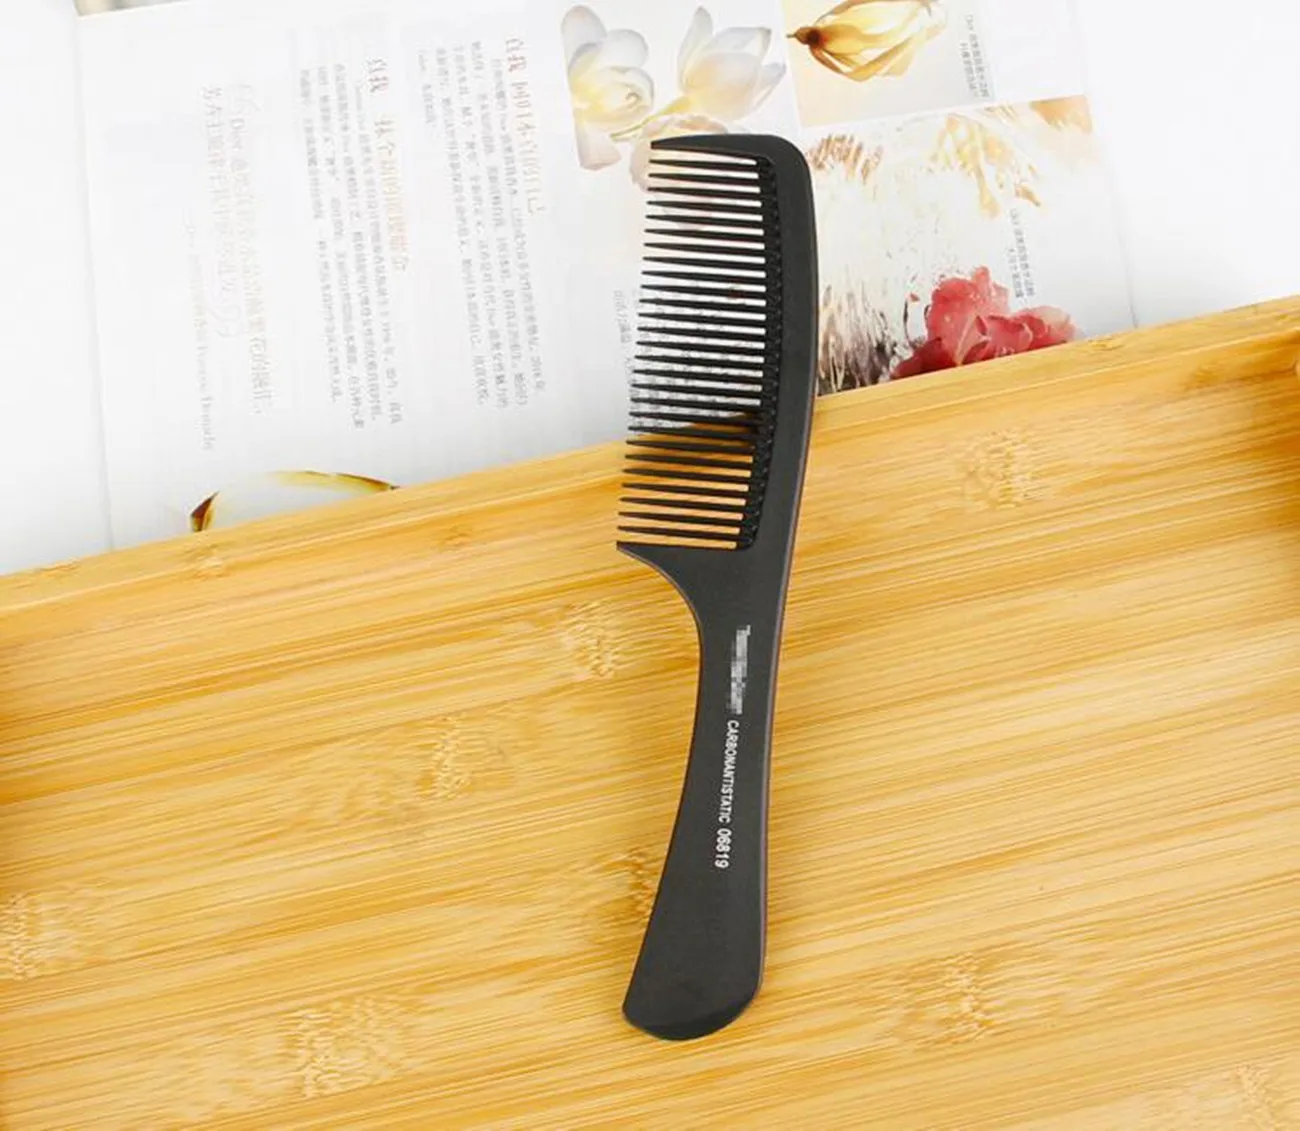 Щетка для волос Professional Black Hard Carbon Расческа для стрижки термостойкая Salon Hair Trimmer расчёски для волос Pin Tail Антистатическая расческа